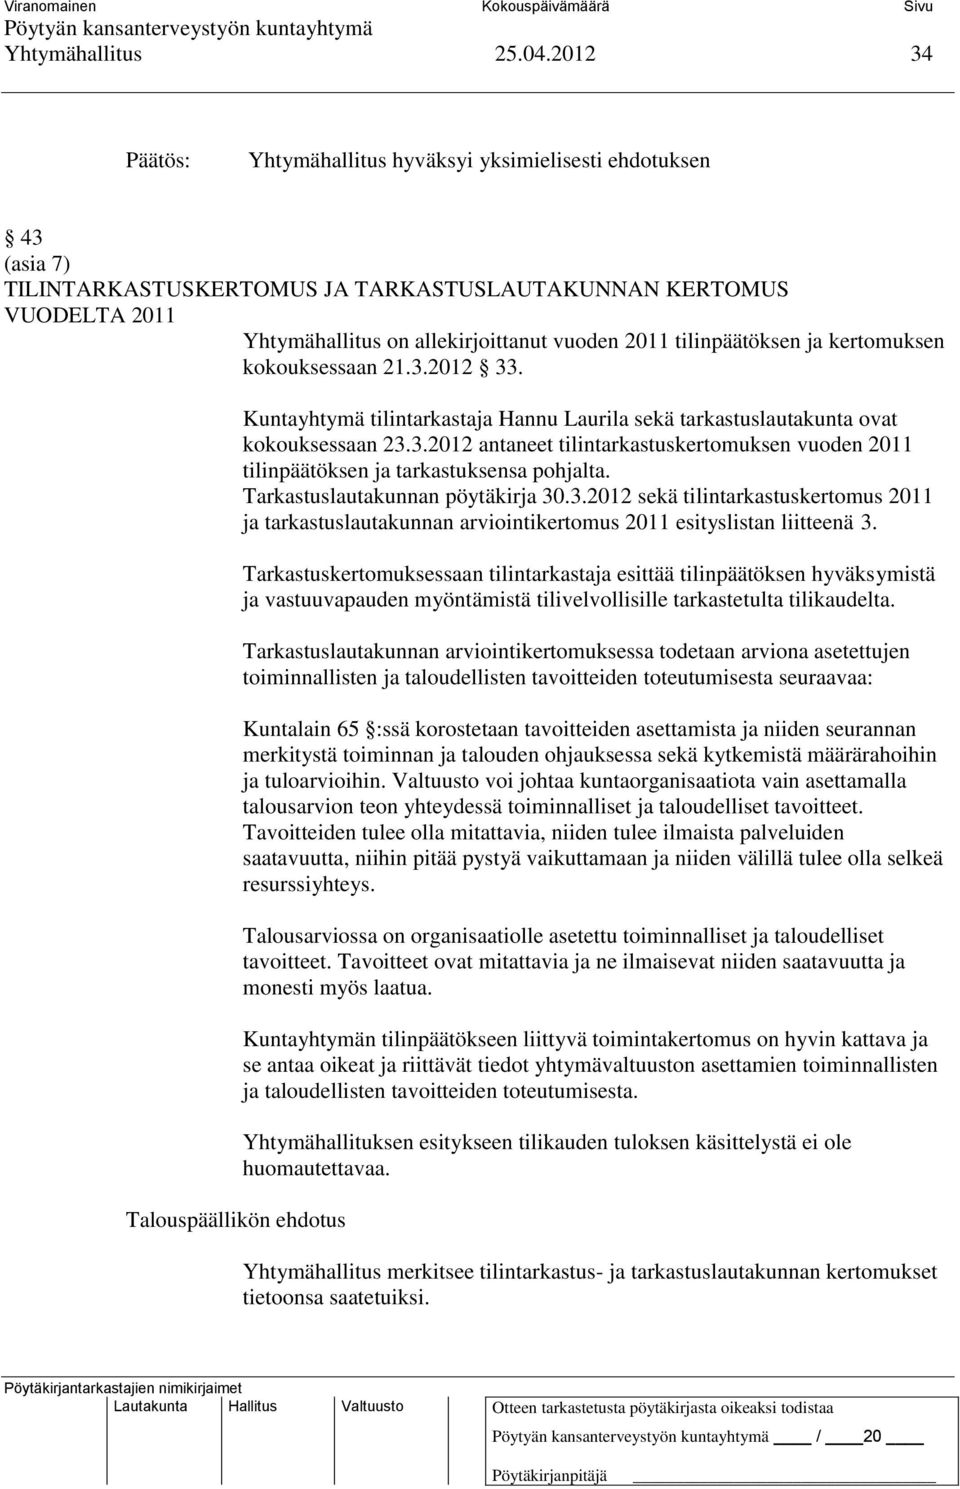 tilinpäätöksen ja kertomuksen kokouksessaan 21.3.2012 33. Kuntayhtymä tilintarkastaja Hannu Laurila sekä tarkastuslautakunta ovat kokouksessaan 23.3.2012 antaneet tilintarkastuskertomuksen vuoden 2011 tilinpäätöksen ja tarkastuksensa pohjalta.